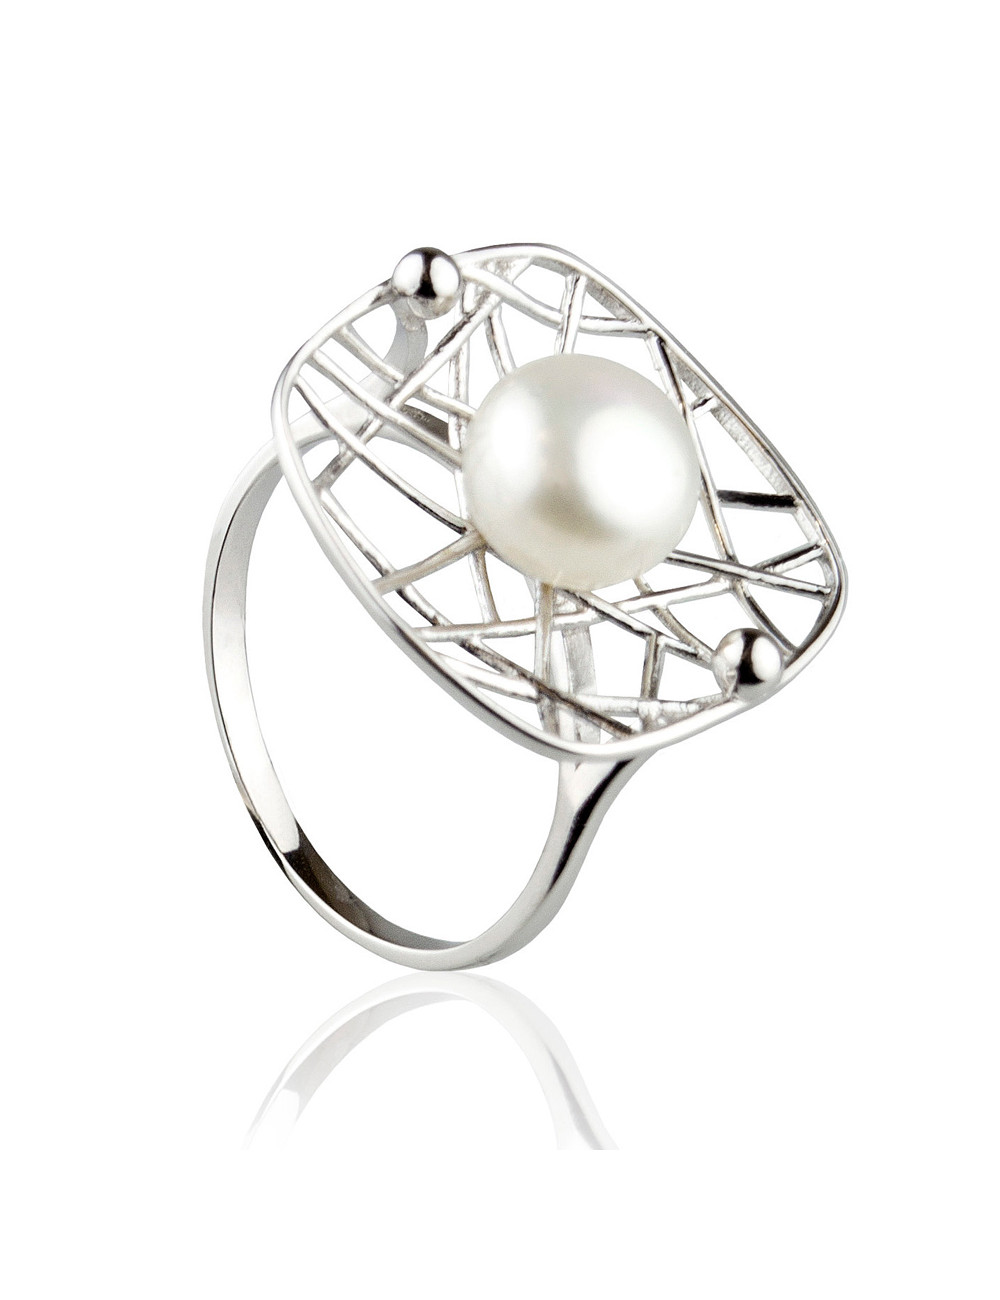 Srebrny pierścionek z ażurowym koszyczkiem, na którym umieszczona jest 3/4 okrągła biała perła RA8595S